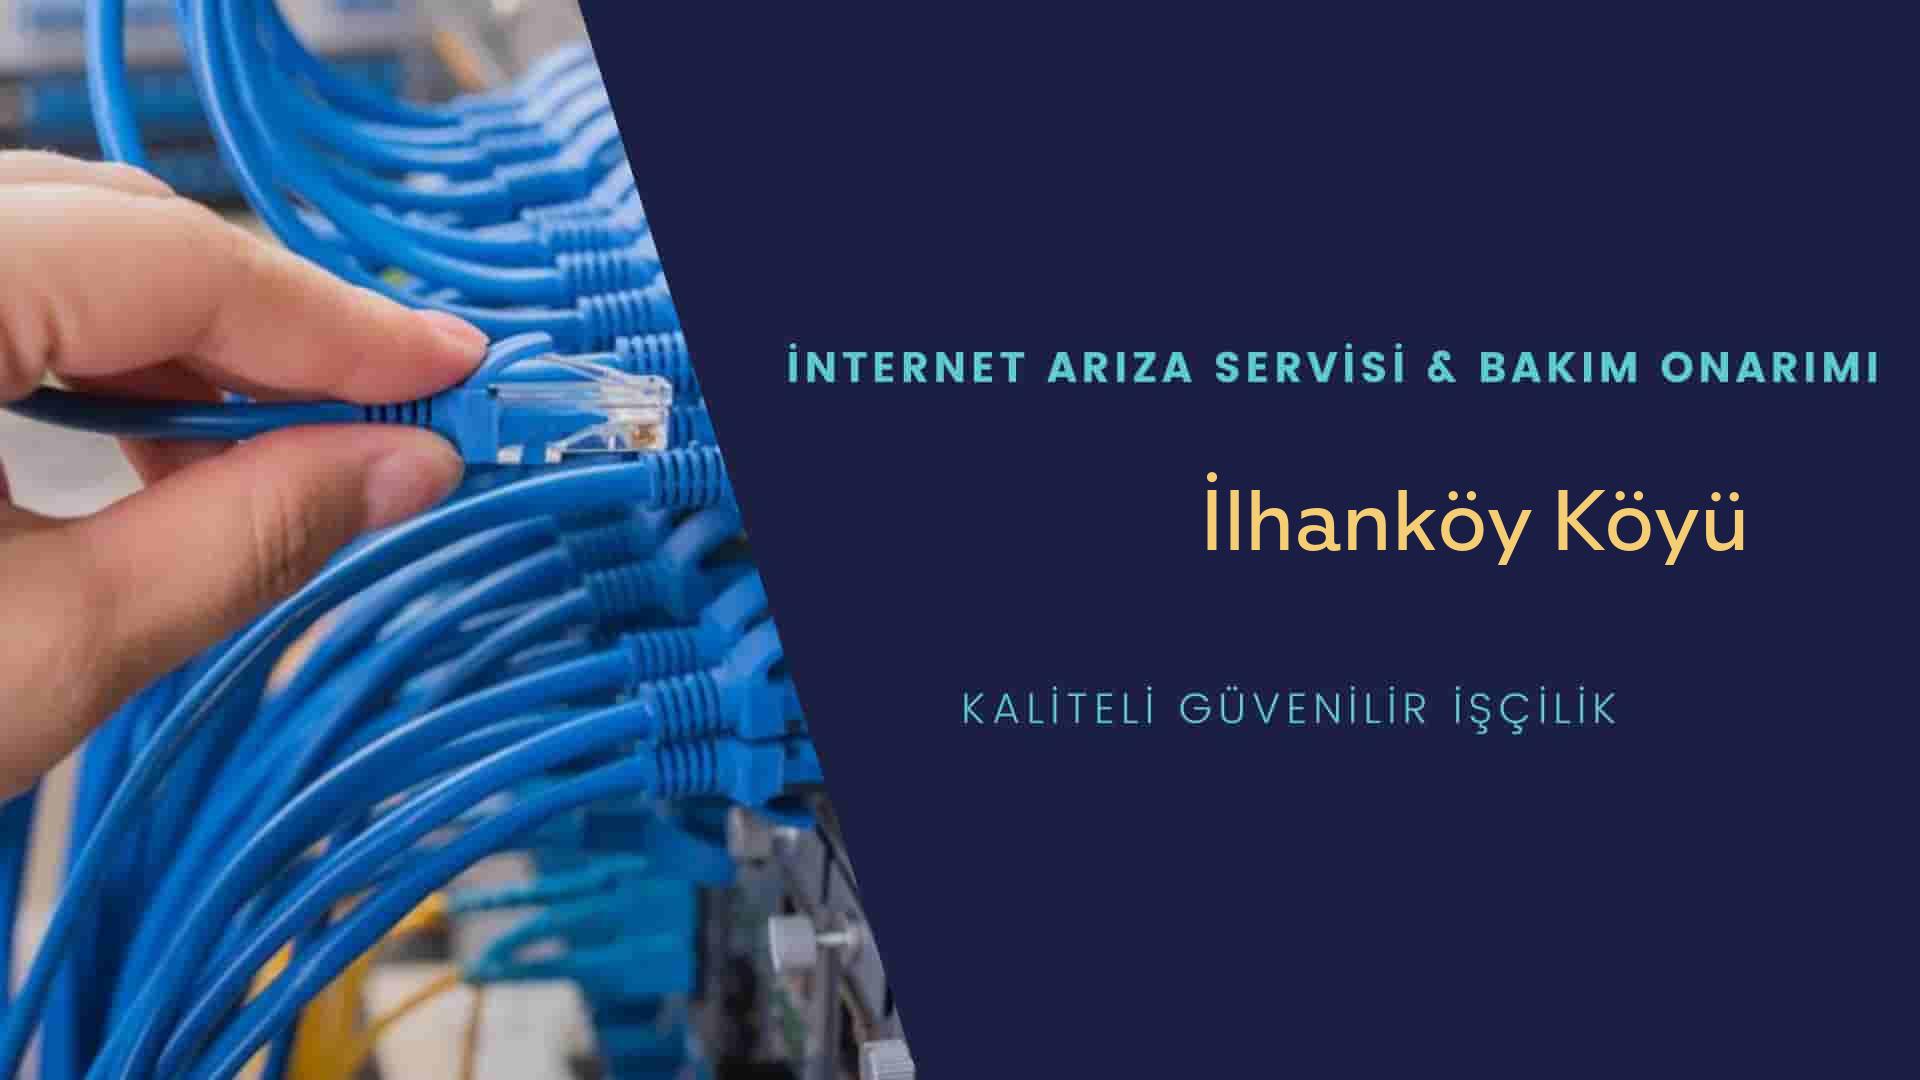 İlhanköy Köyü internet kablosu çekimi yapan yerler veya elektrikçiler mi? arıyorsunuz doğru yerdesiniz o zaman sizlere 7/24 yardımcı olacak profesyonel ustalarımız bir telefon kadar yakındır size.